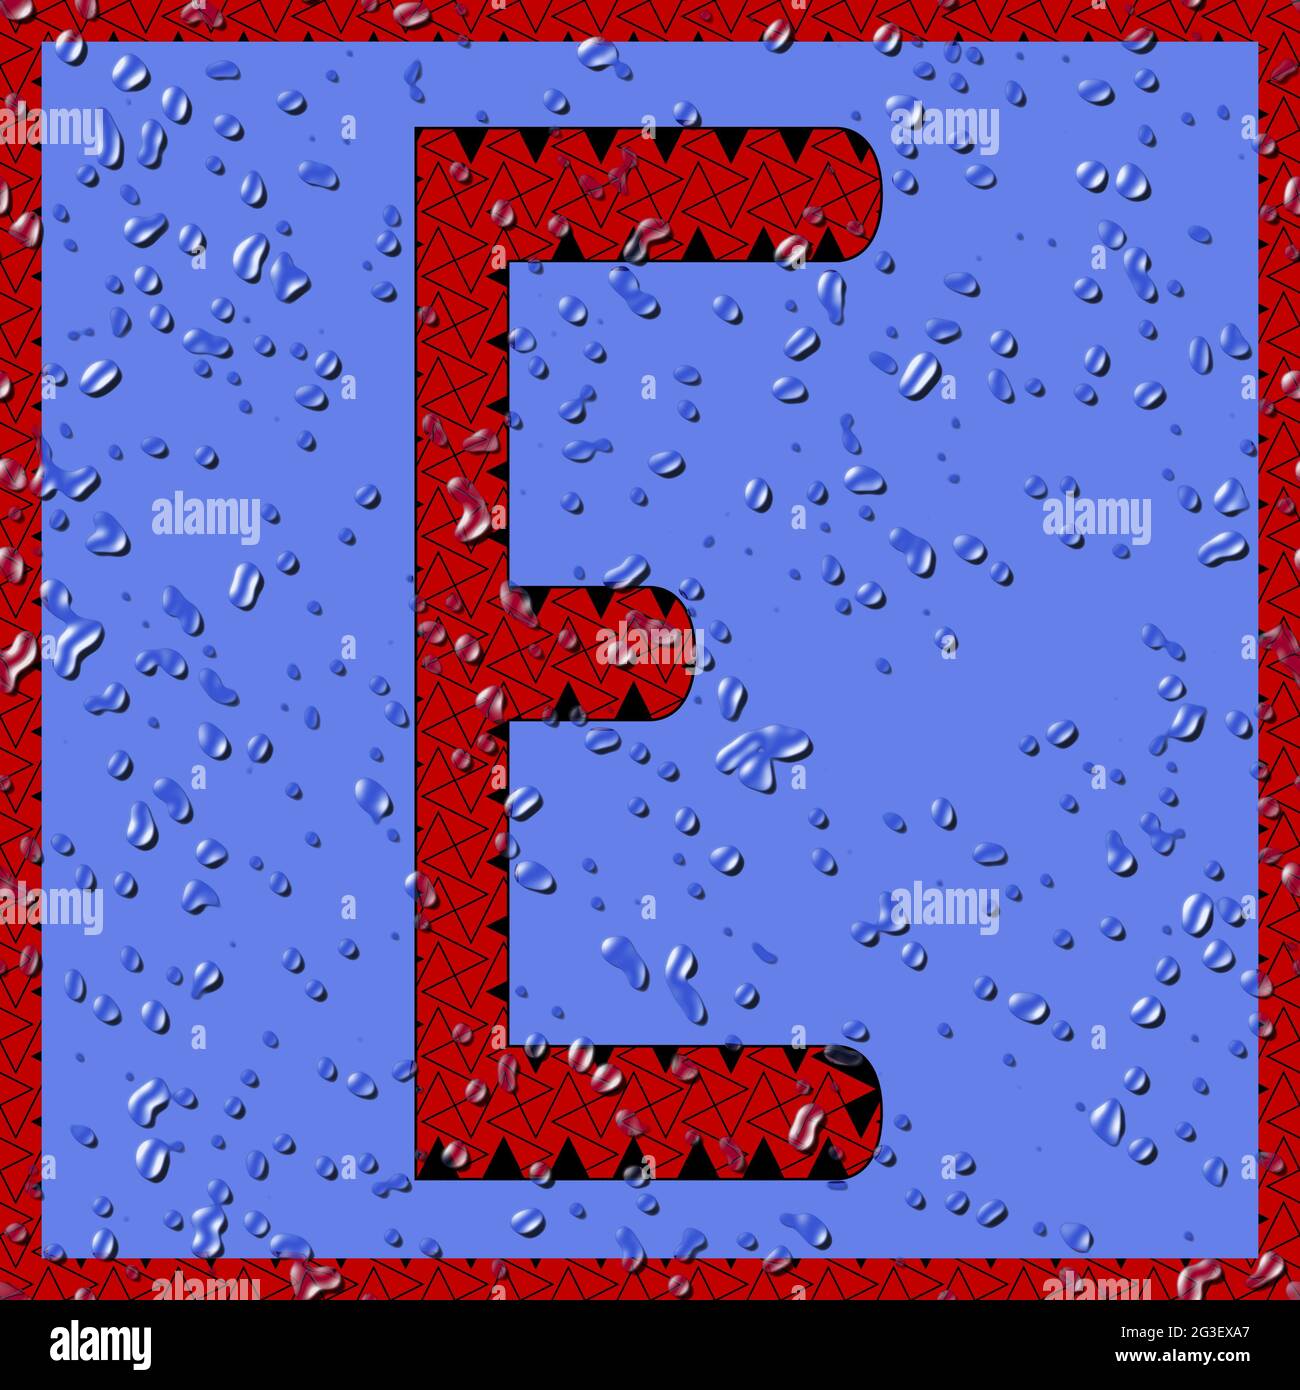 Grafik mit dem OCR-Großbuchstaben E als rotes Monogramm mit blauen Wassertropfen Stockfoto